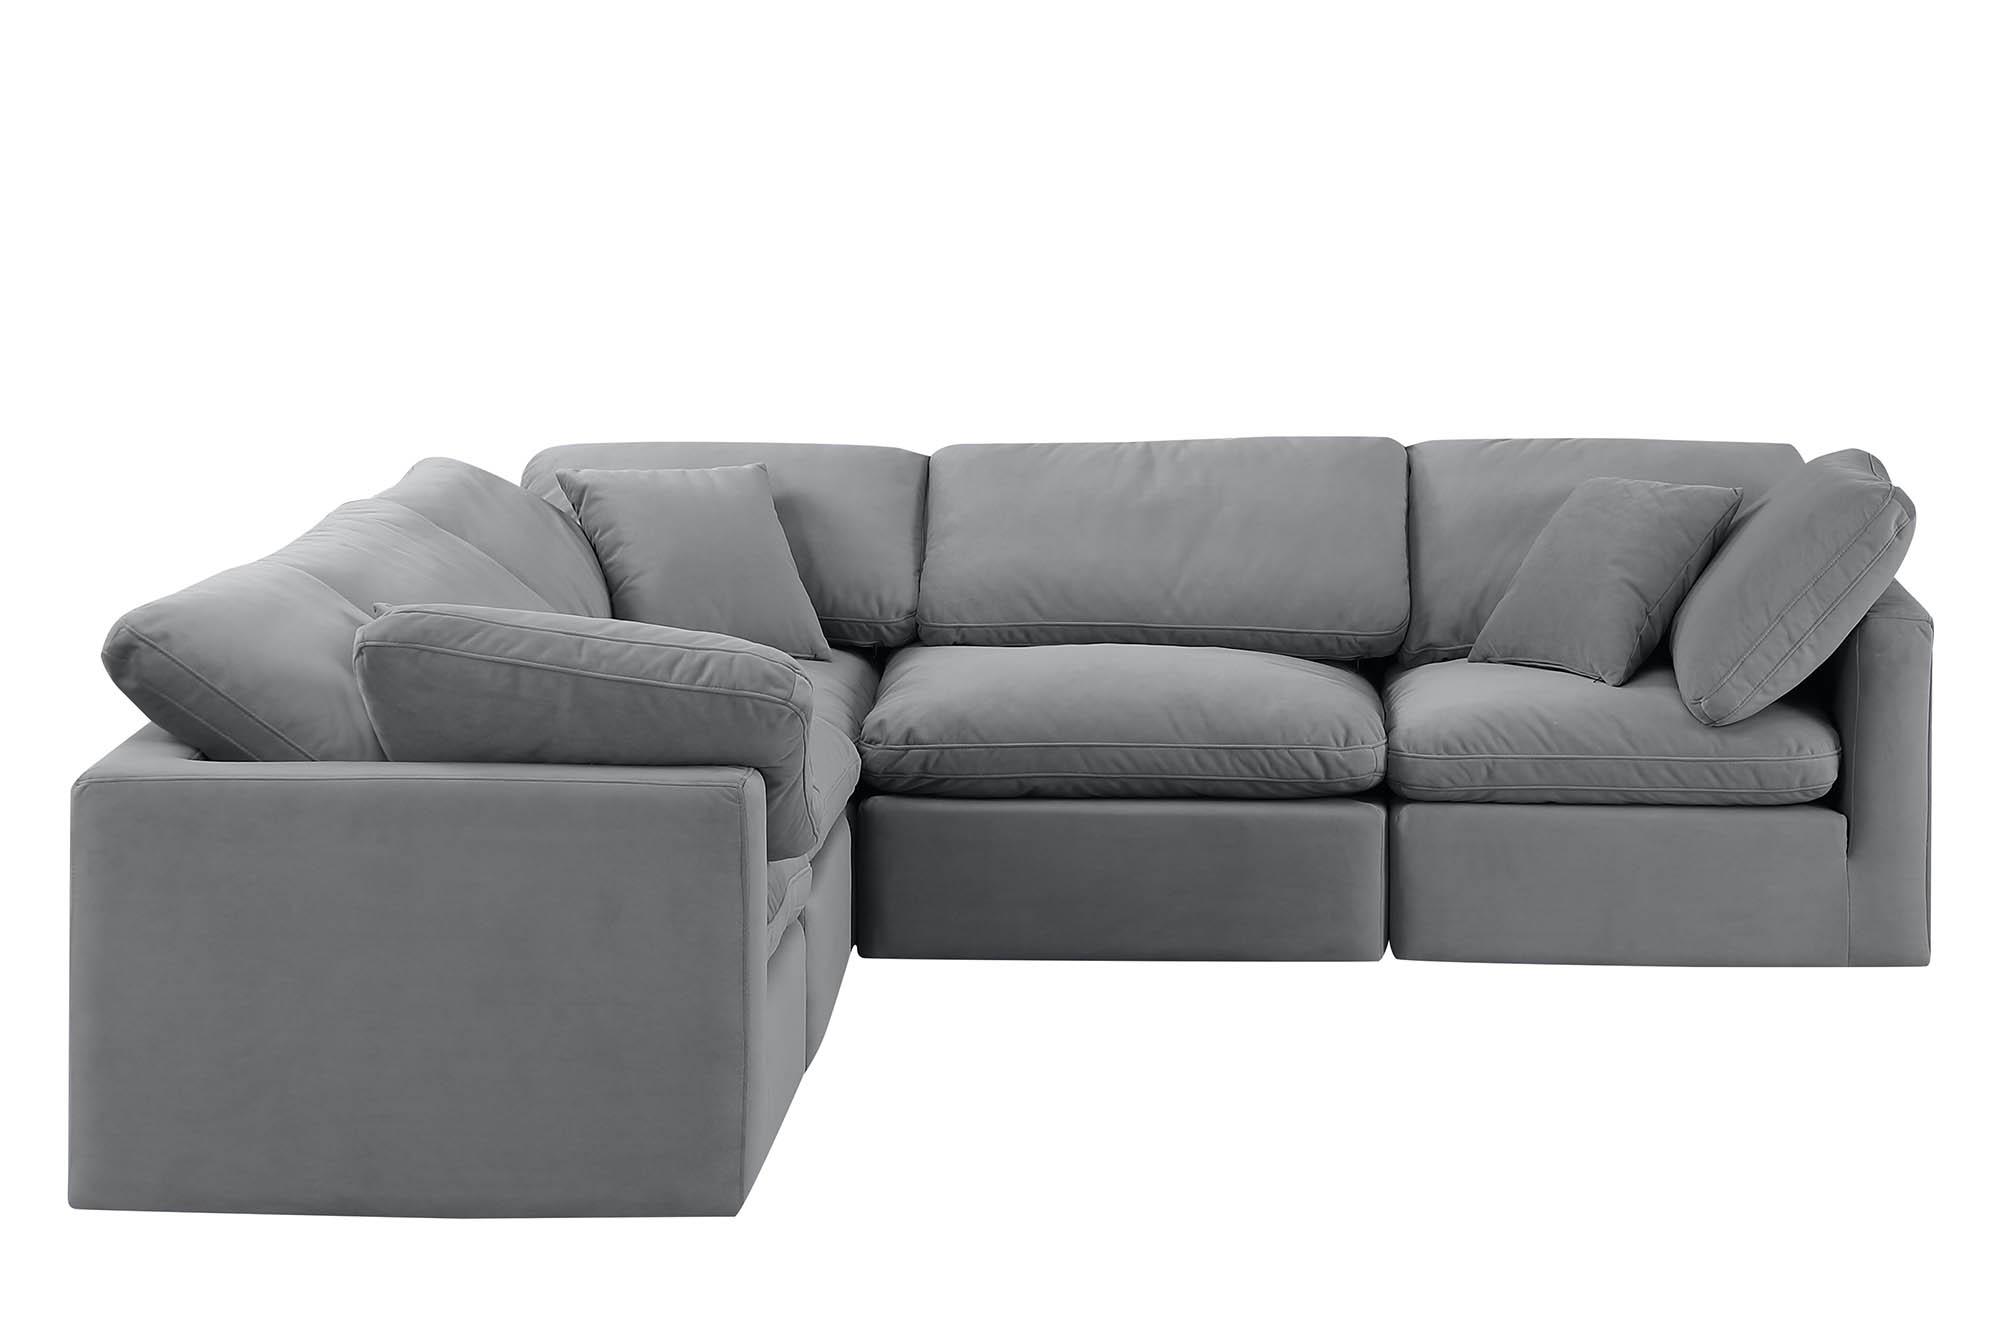 

    
Meridian Furniture INDULGE 147Grey-Sec5C Modular Sectional Sofa Gray 147Grey-Sec5C
